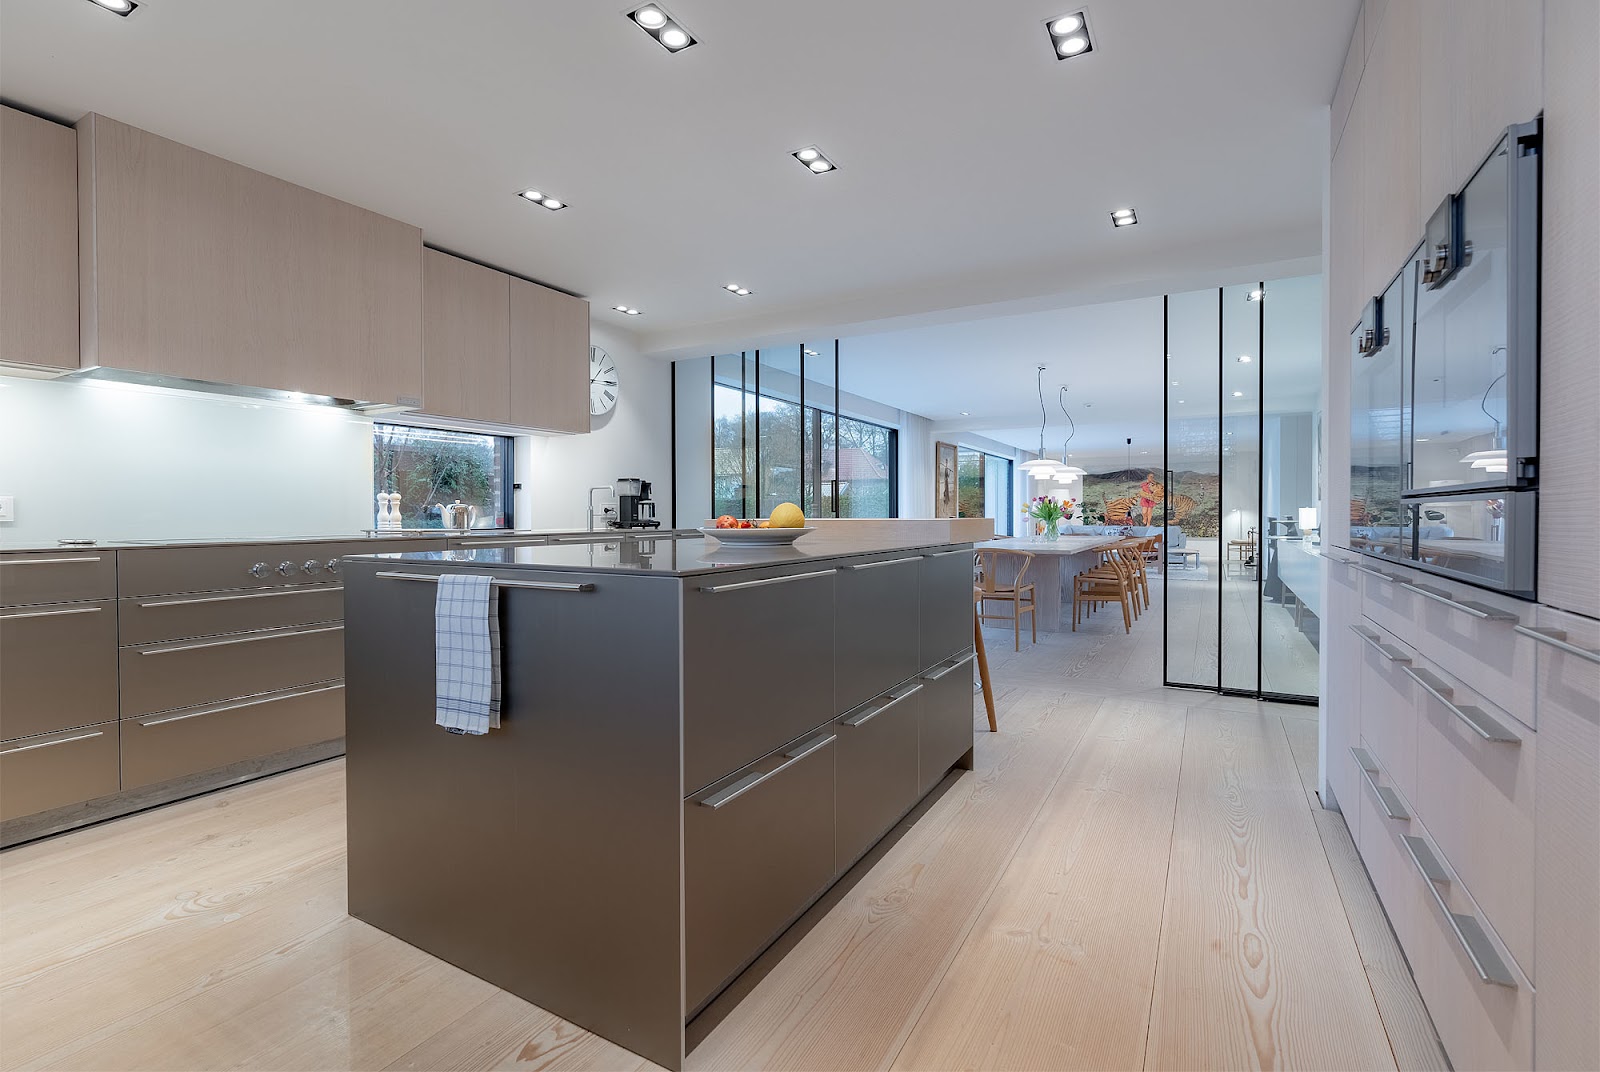 Elegant kitchen with grey facades and Kitchen Island